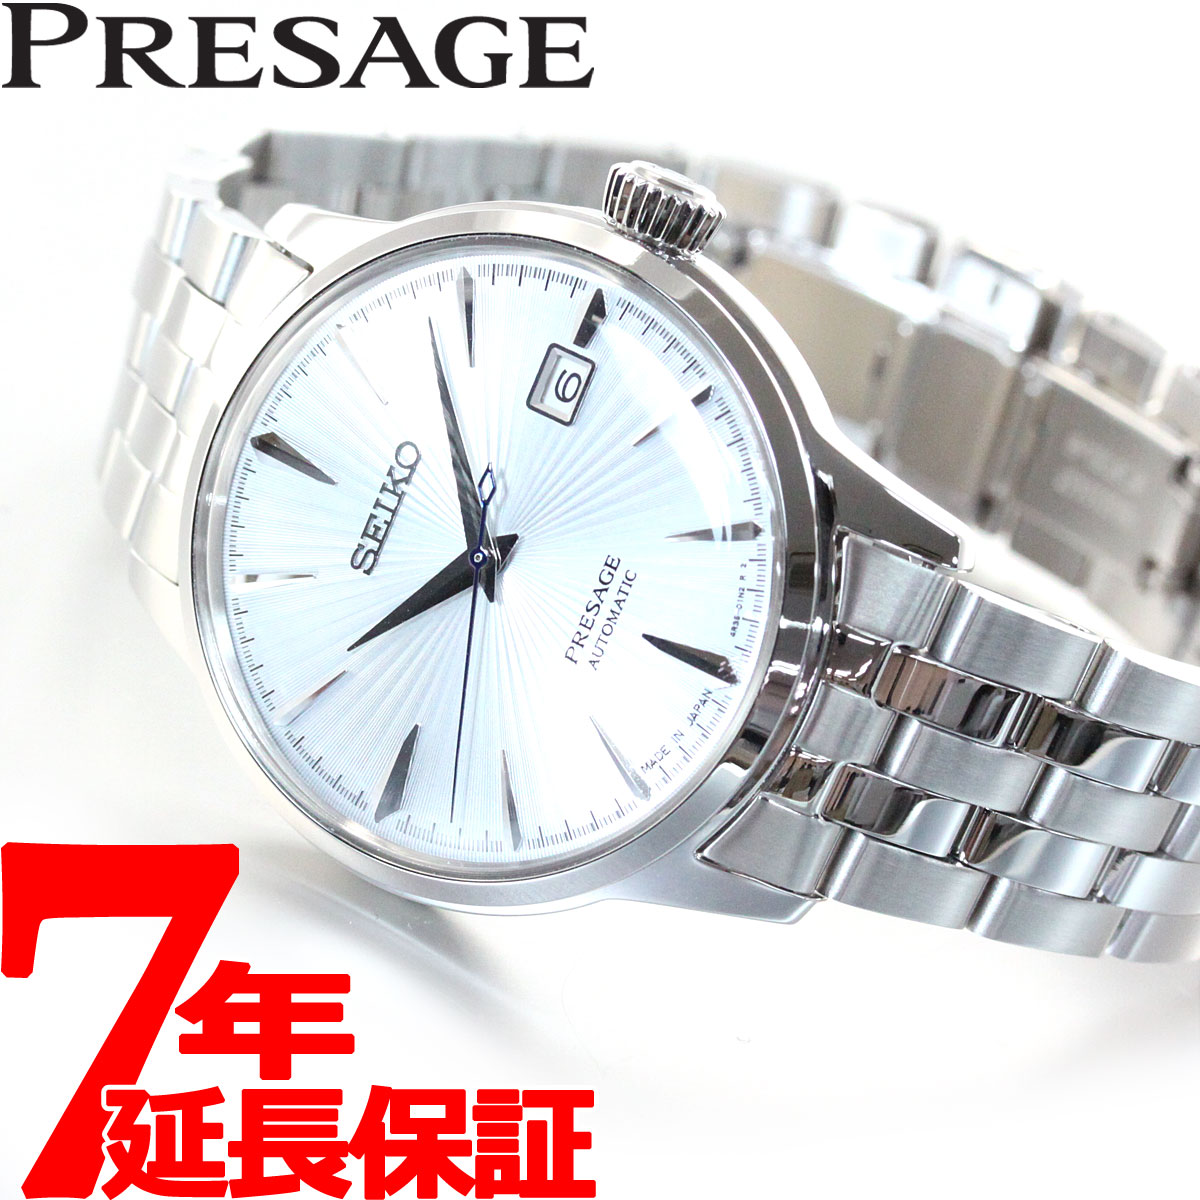 セイコー プレザージュ SEIKO PRESAGE 自動巻き メカニカル 腕時計 メンズ ベーシックライン カクテルタイム SARY161